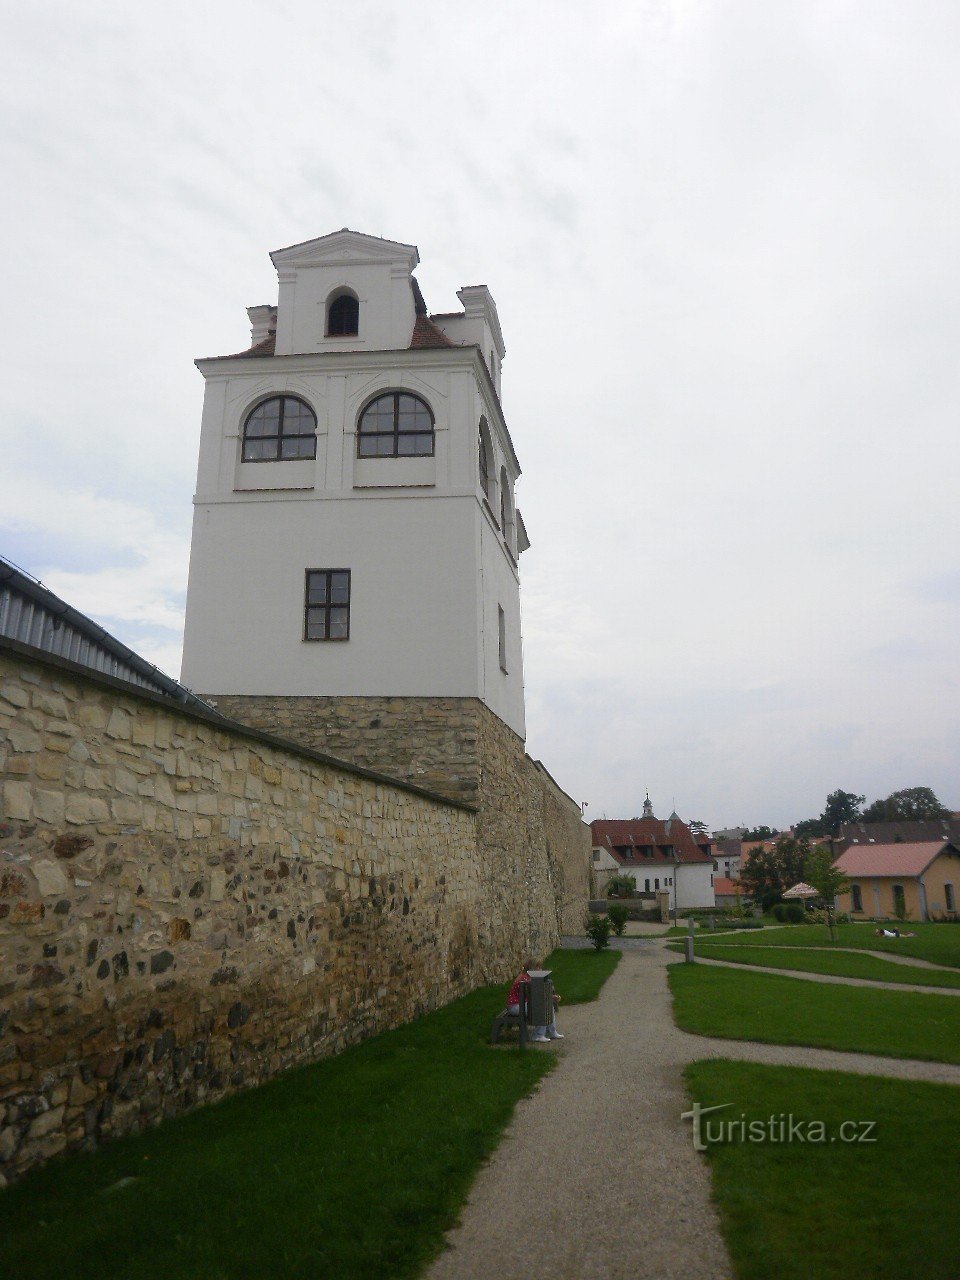 Litoměřice este un oraș la confluența Elba și Ohře